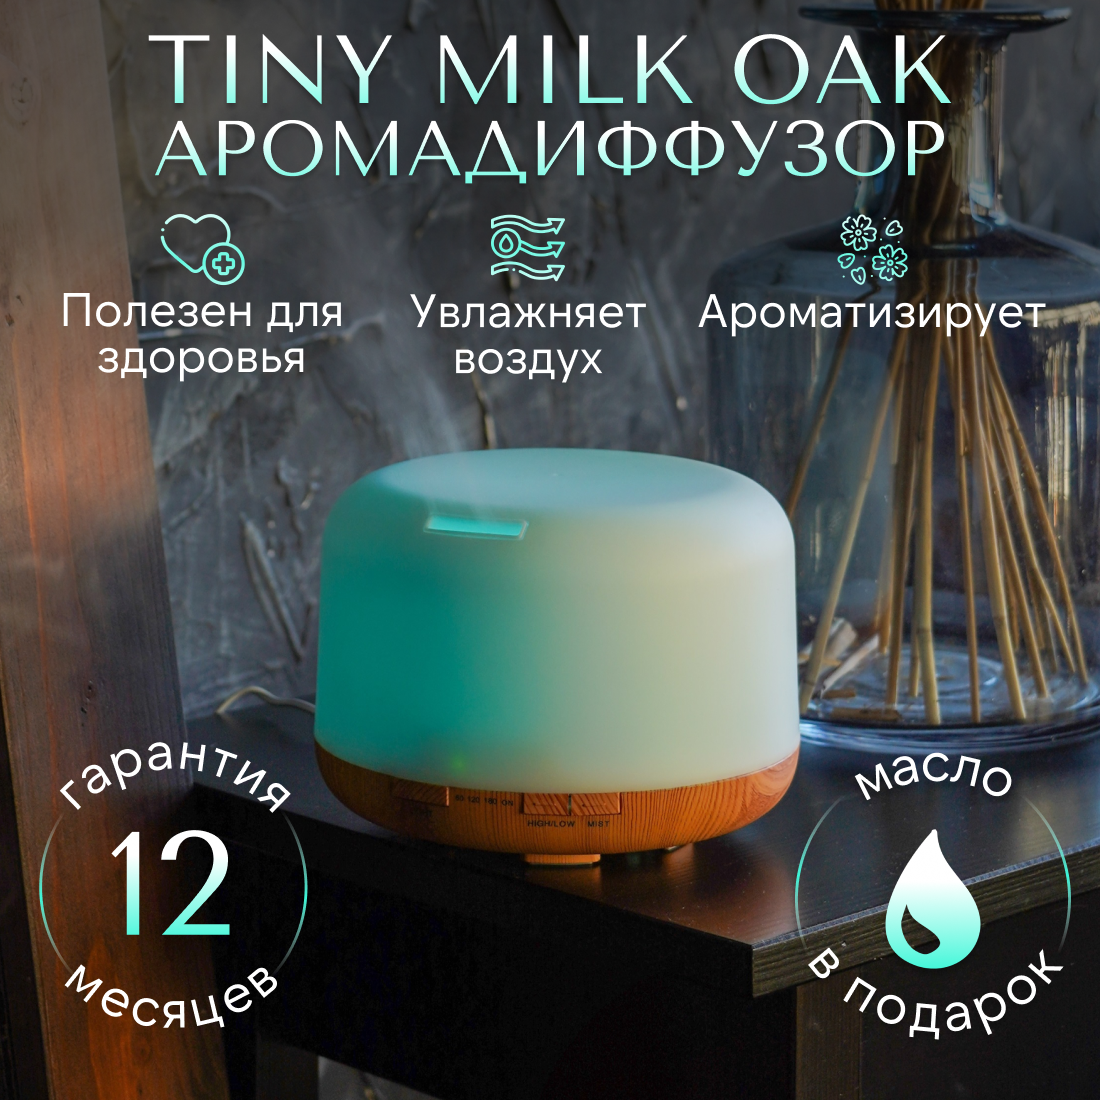 Увлажнитель воздуха SENS TINY MILK OAK с ароматизацией, 7 цветов подсветки